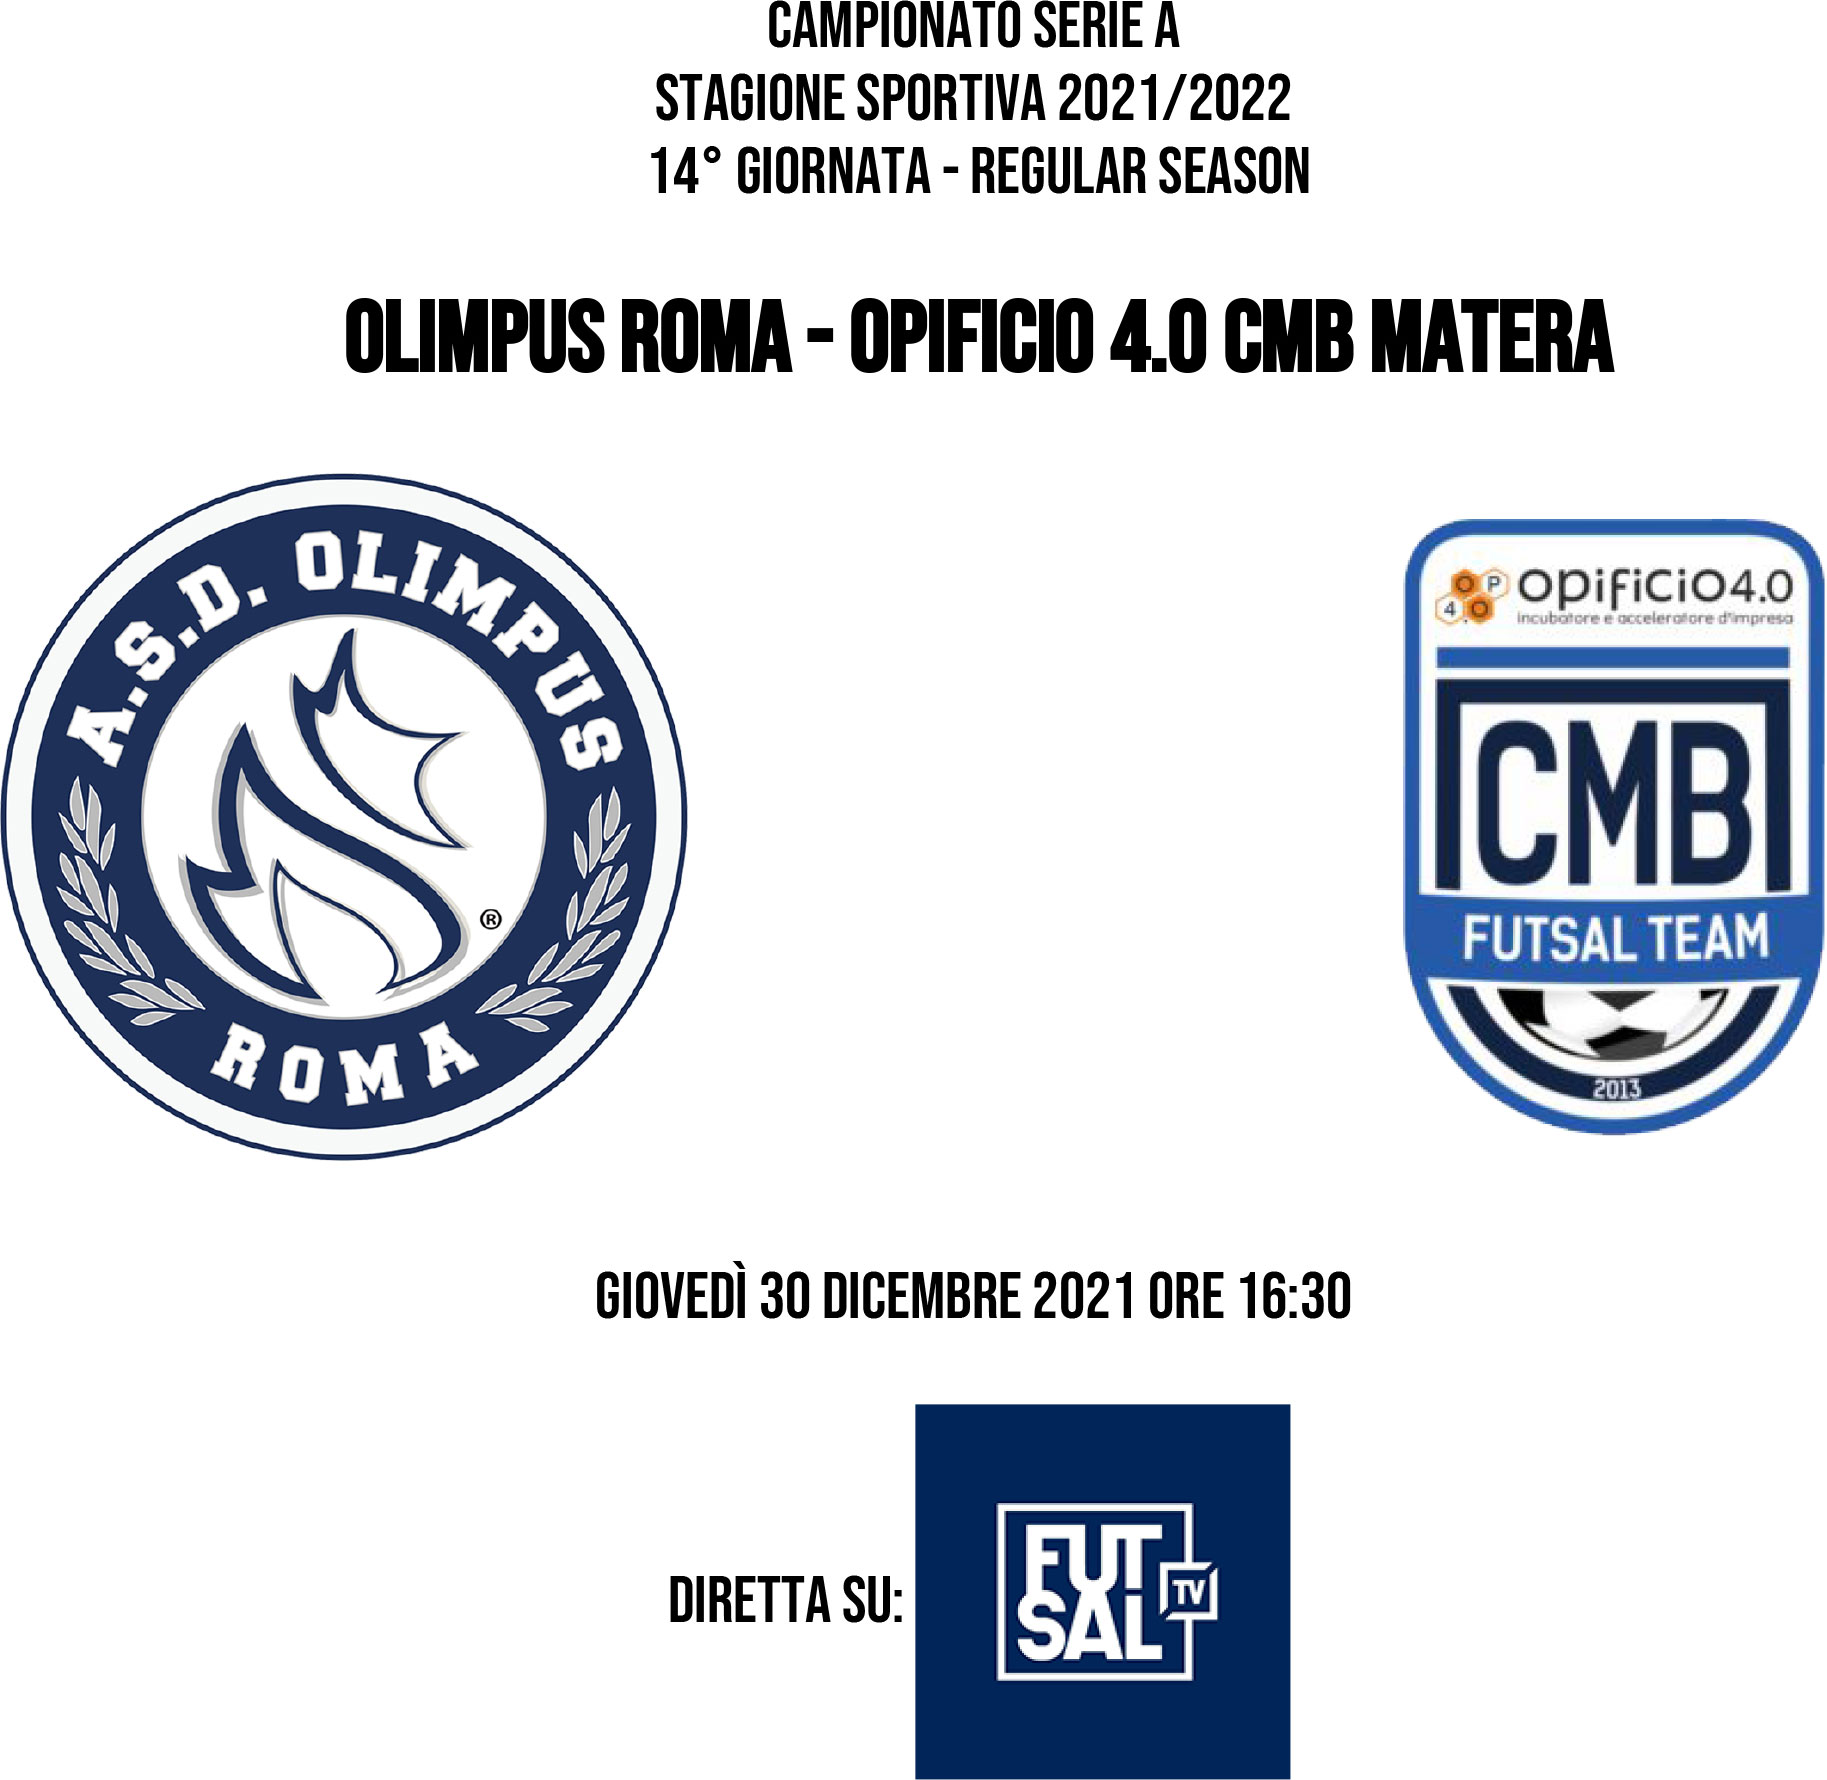 La cartella stampa della quattordicesima giornata: Olimpus Roma - Opificio 4.0 CMB Matera